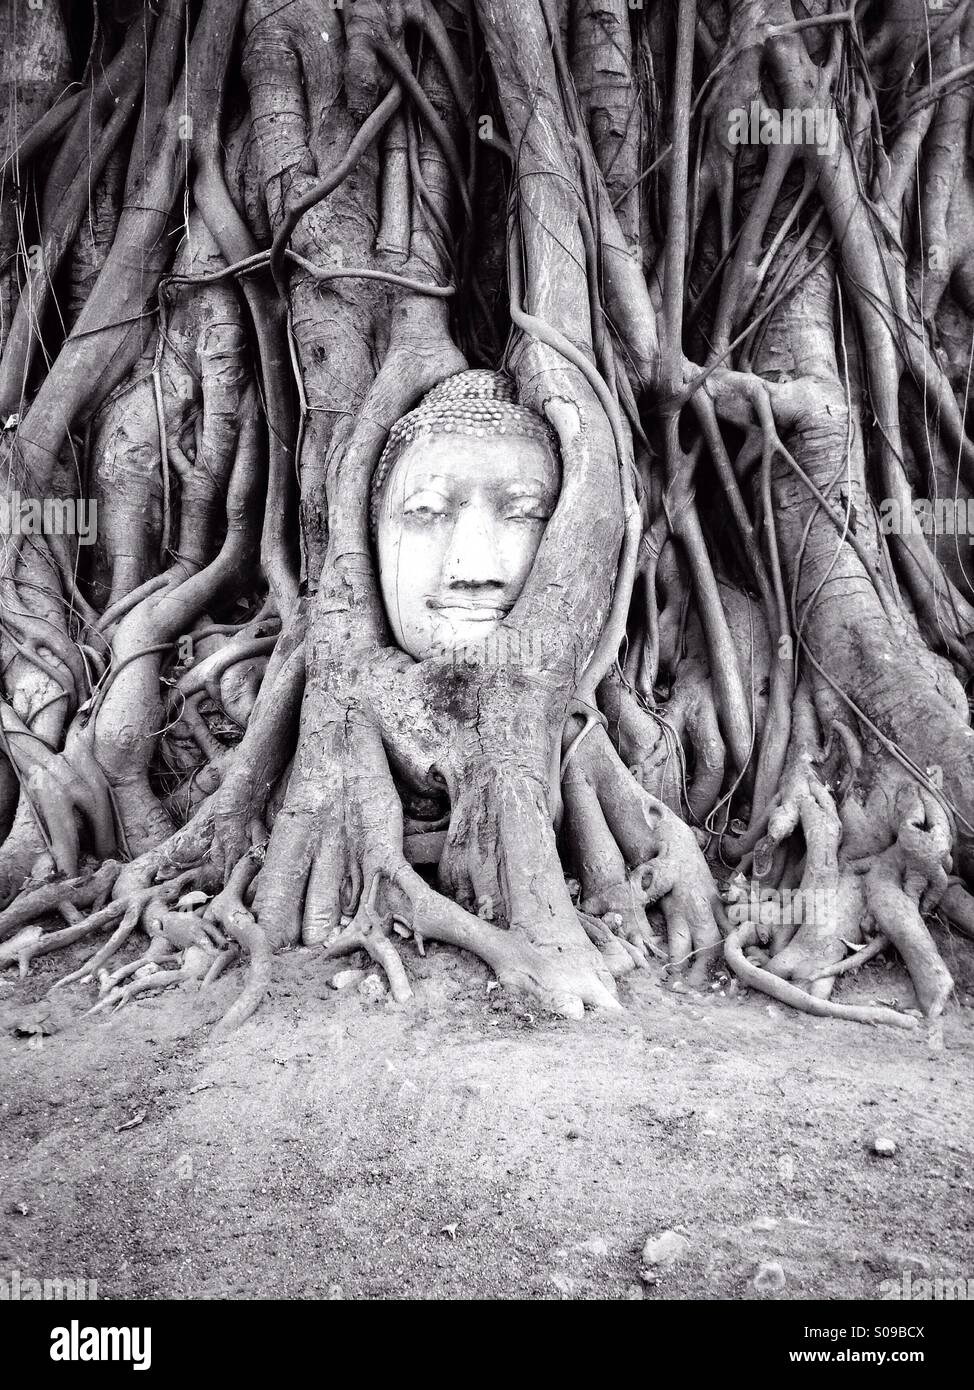 Gesichts Restpankreas eine Buddha-Statue, verstrickt mit Wurzeln, Blicke über das Wat Mahathat Gelände. Ayutthaya, Thailand. Stockfoto